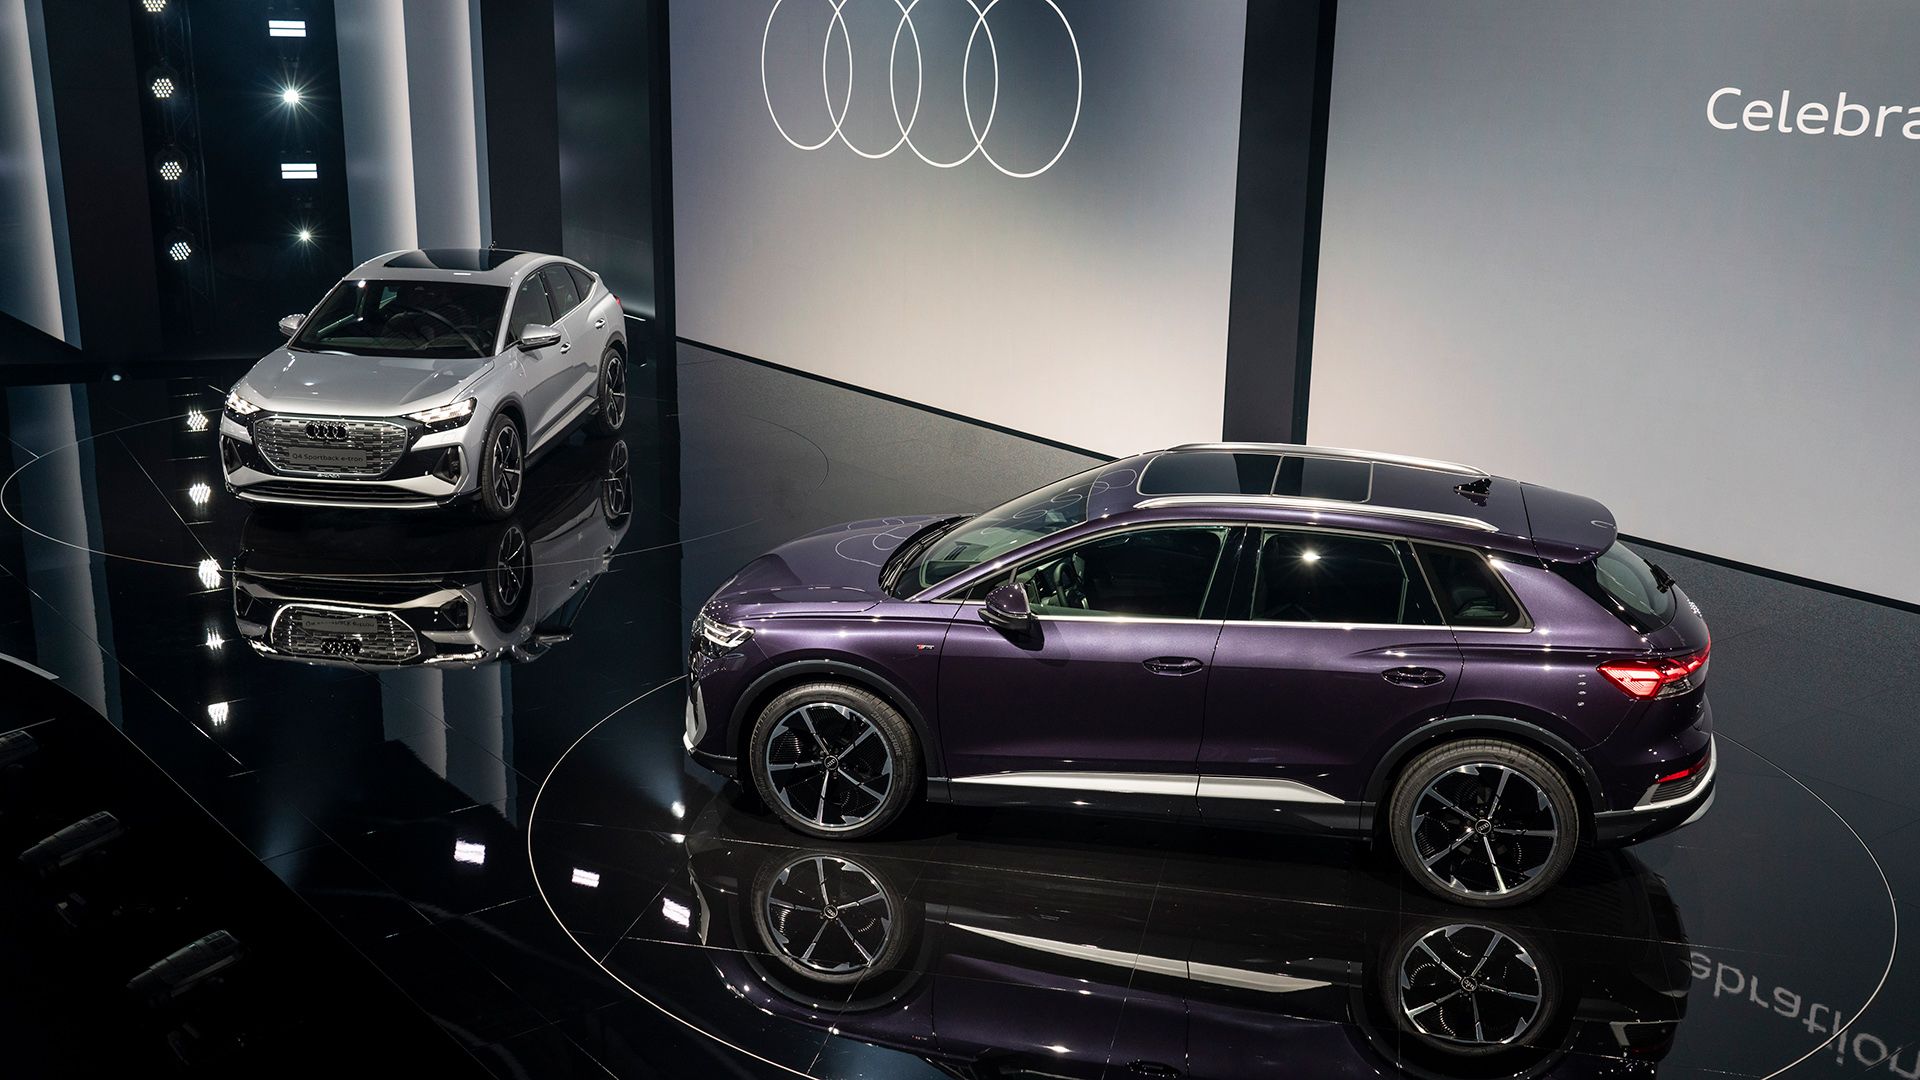 Op de foto staan twee modellen van de Audi Q4 e-tron op het toneel – zilverkleurig en paars.